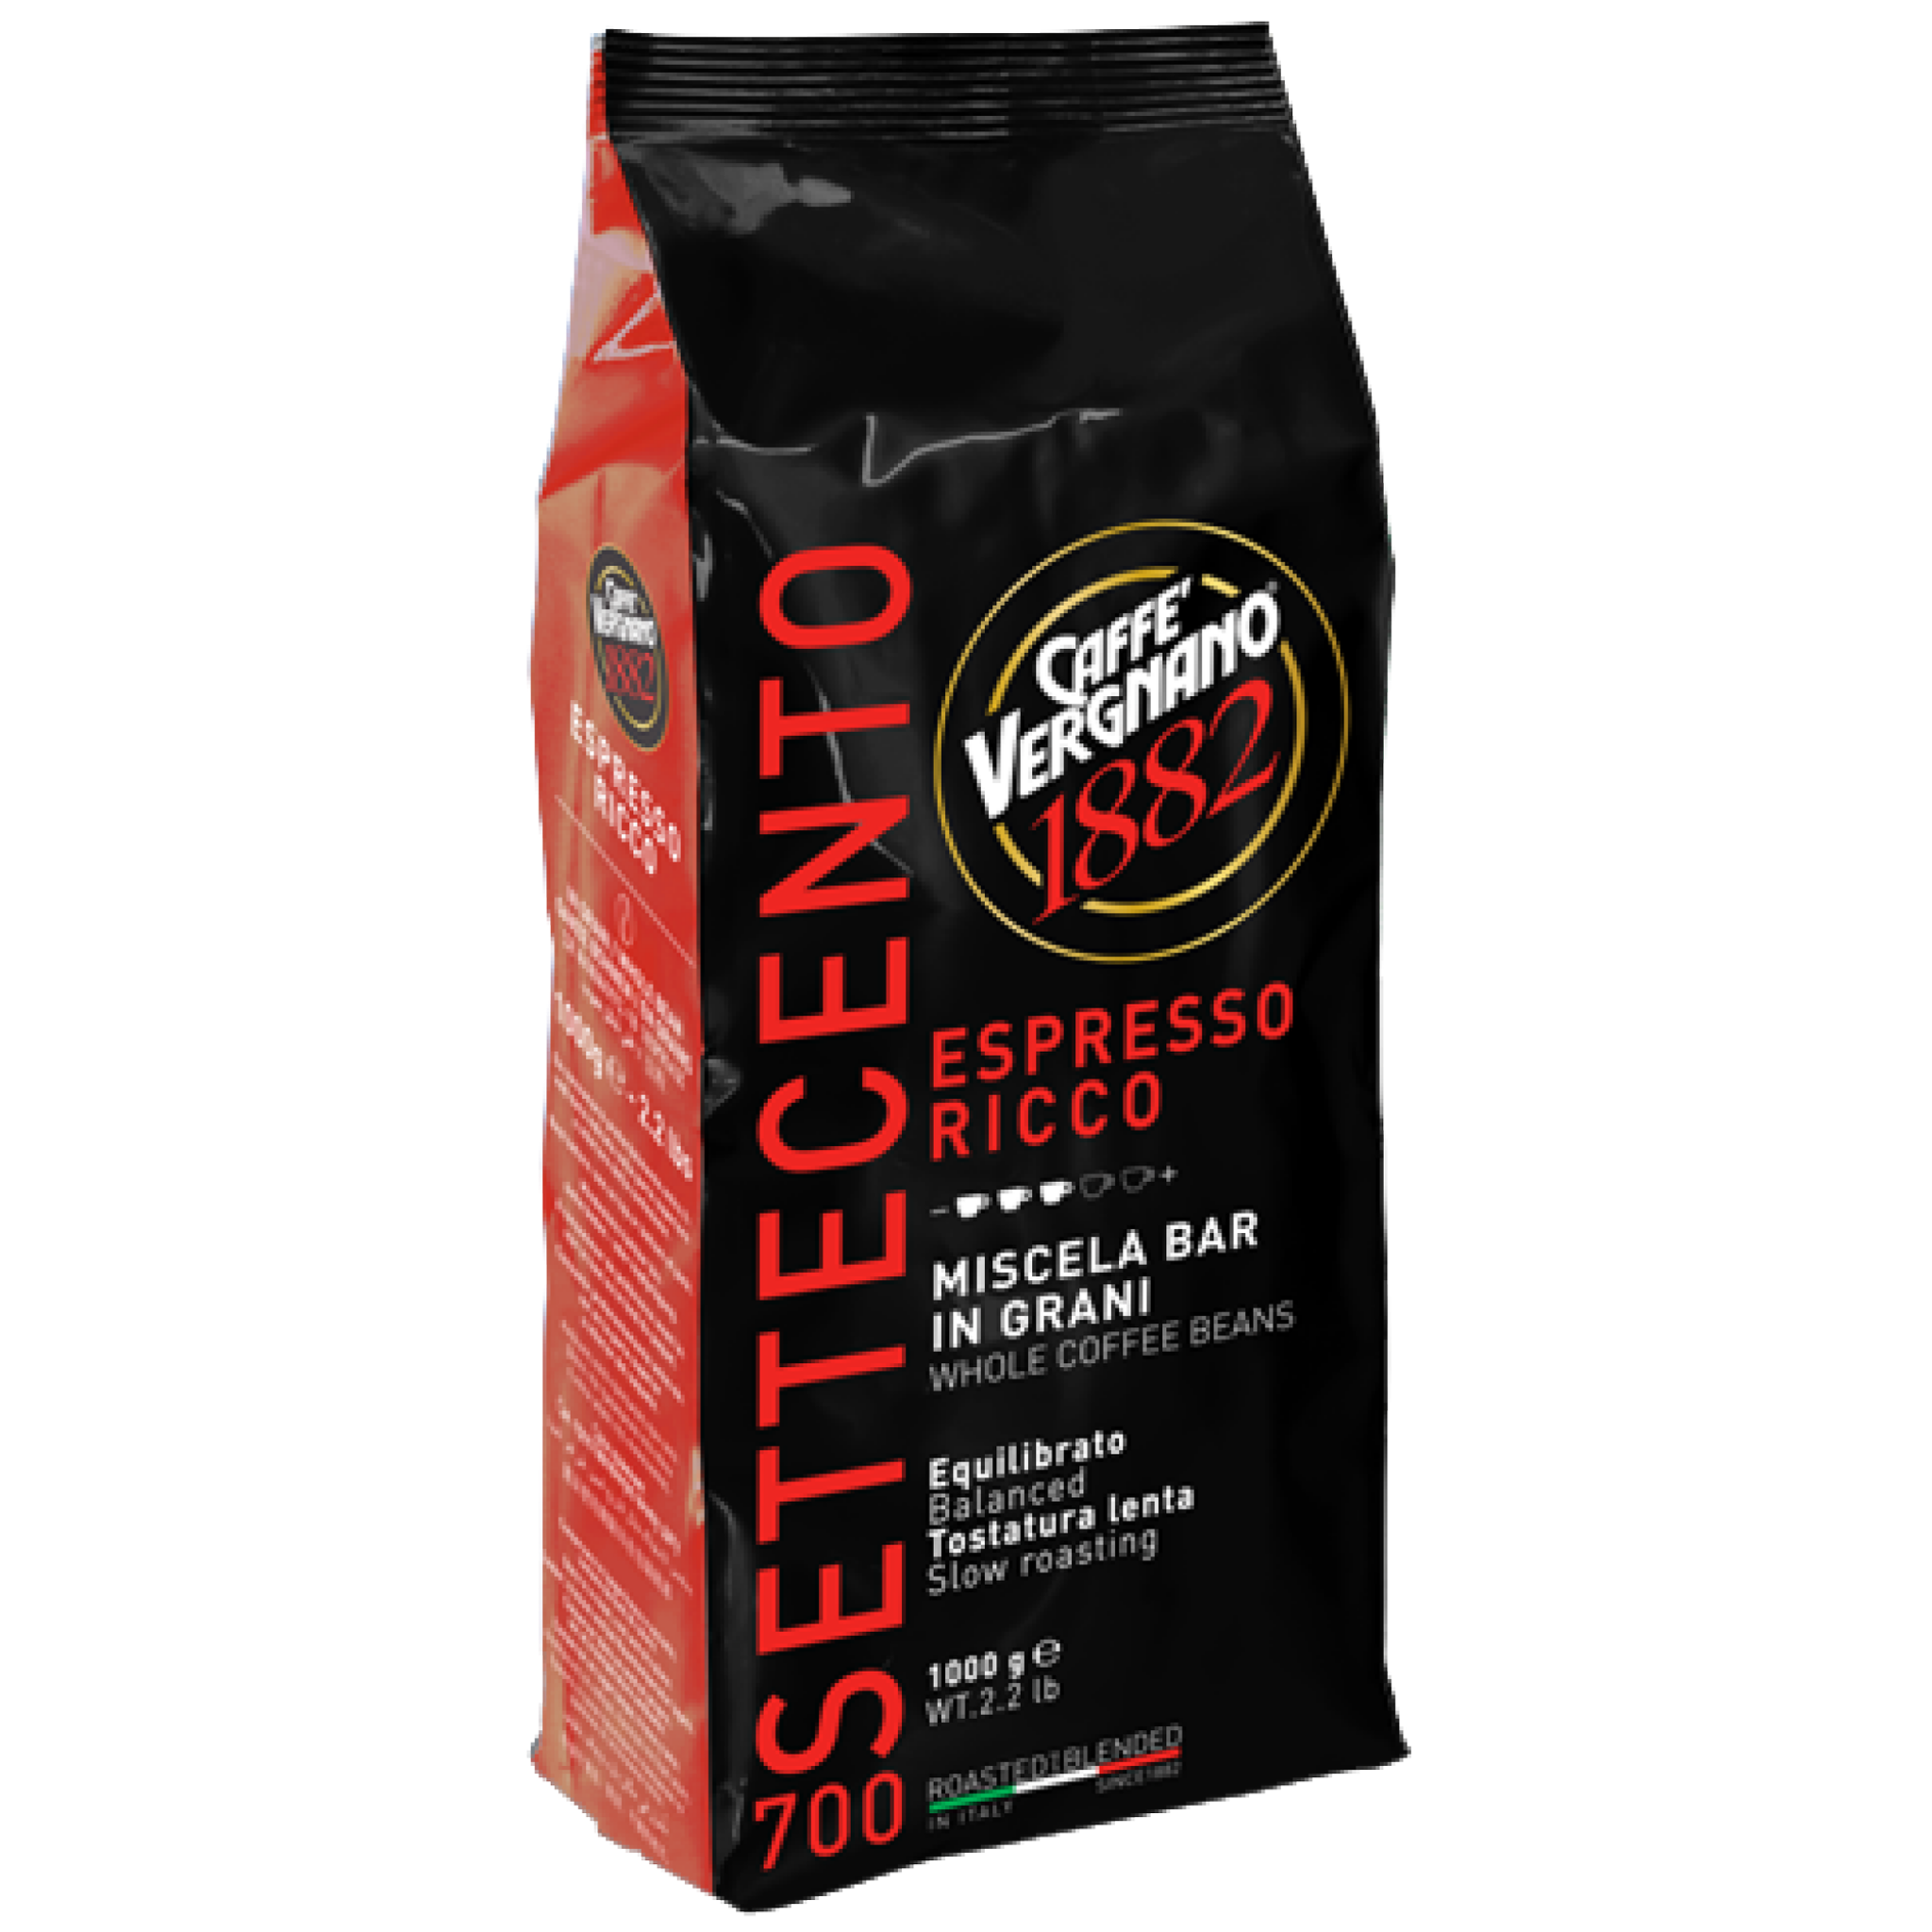 Caffè Vergnano 1882 Espresso Ricco 700 Coffee Beans 1 Kg – Coffee District